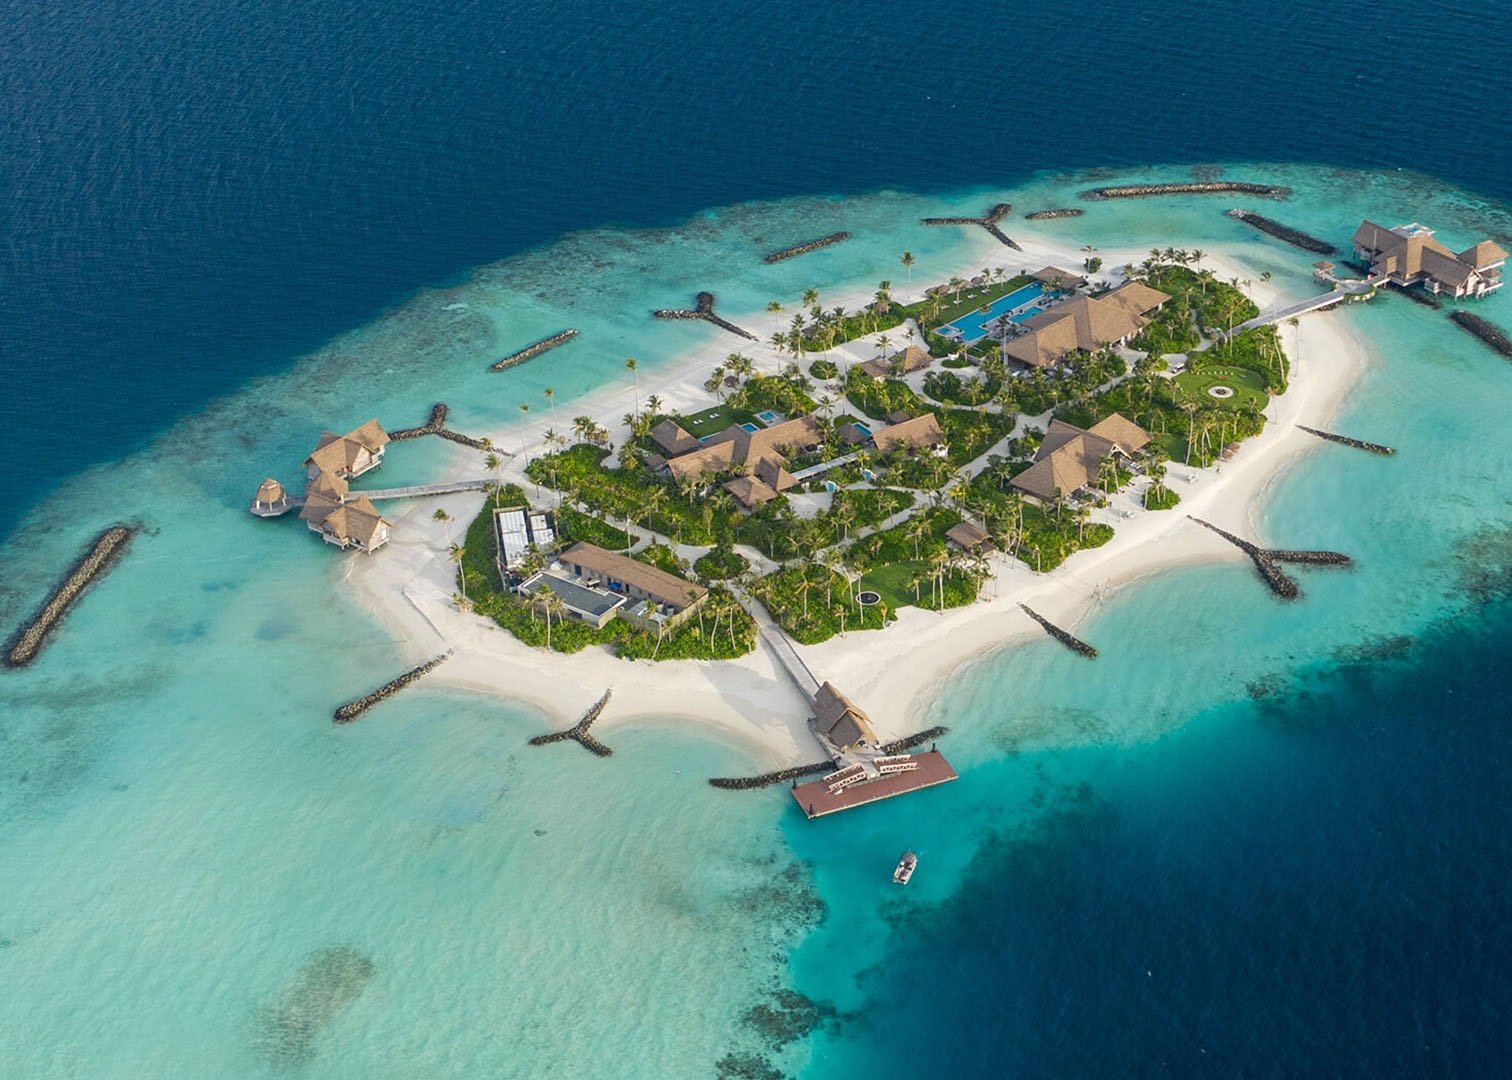 Epic island. Waldorf Astoria Maldives карта. Waldorf Astoria Maldives Ithaafushi 5 Luxe. Отель Вальдорф Мальдивы частный остров. Личный остров.